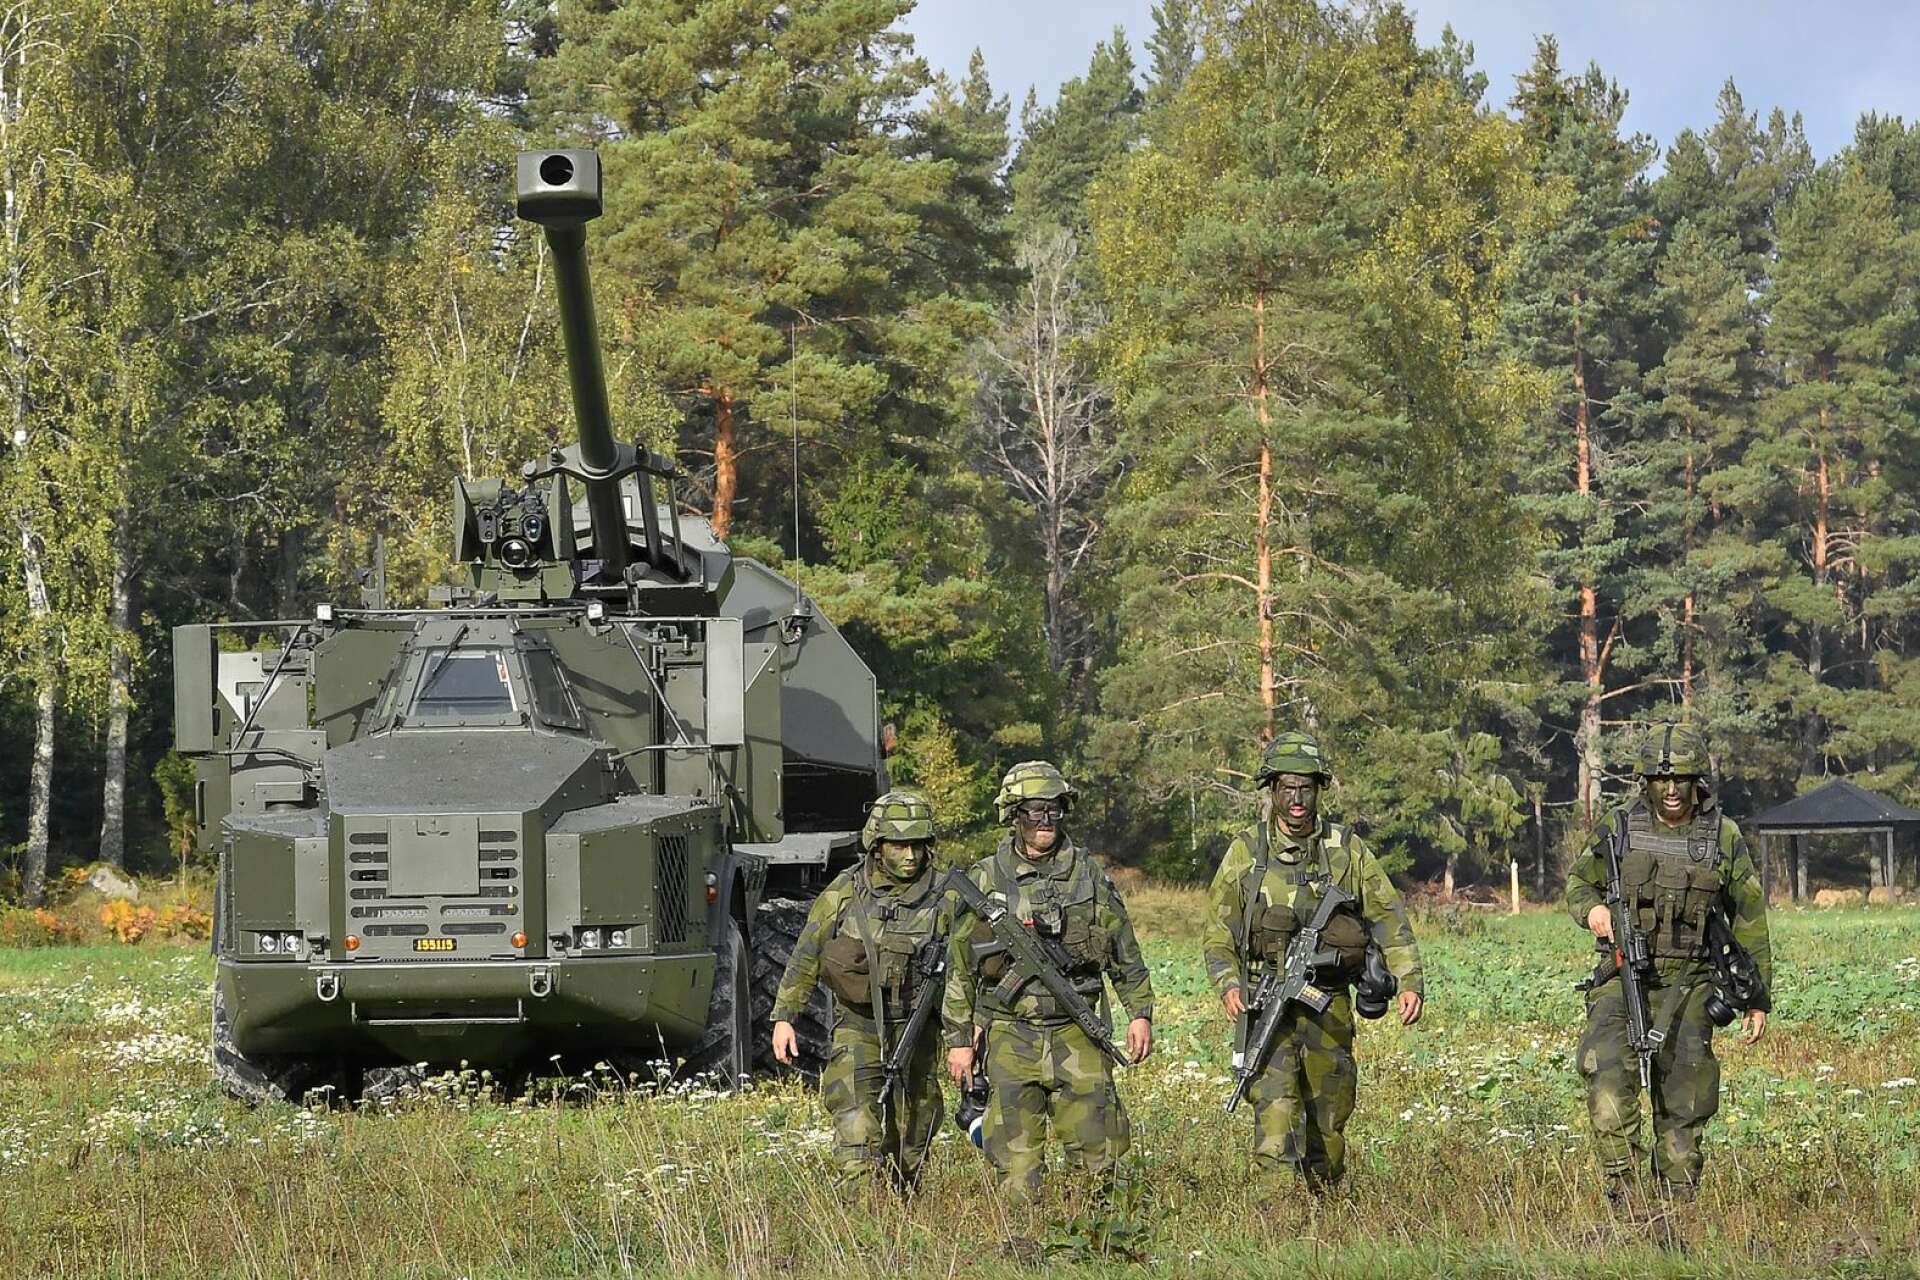 Sedan 1900-talets början har anrika Bofors varit en av de största leverantörerna av högteknologisk försvarsmateriel till svenska försvaret och haft stora framgångar på exportmarknaden.